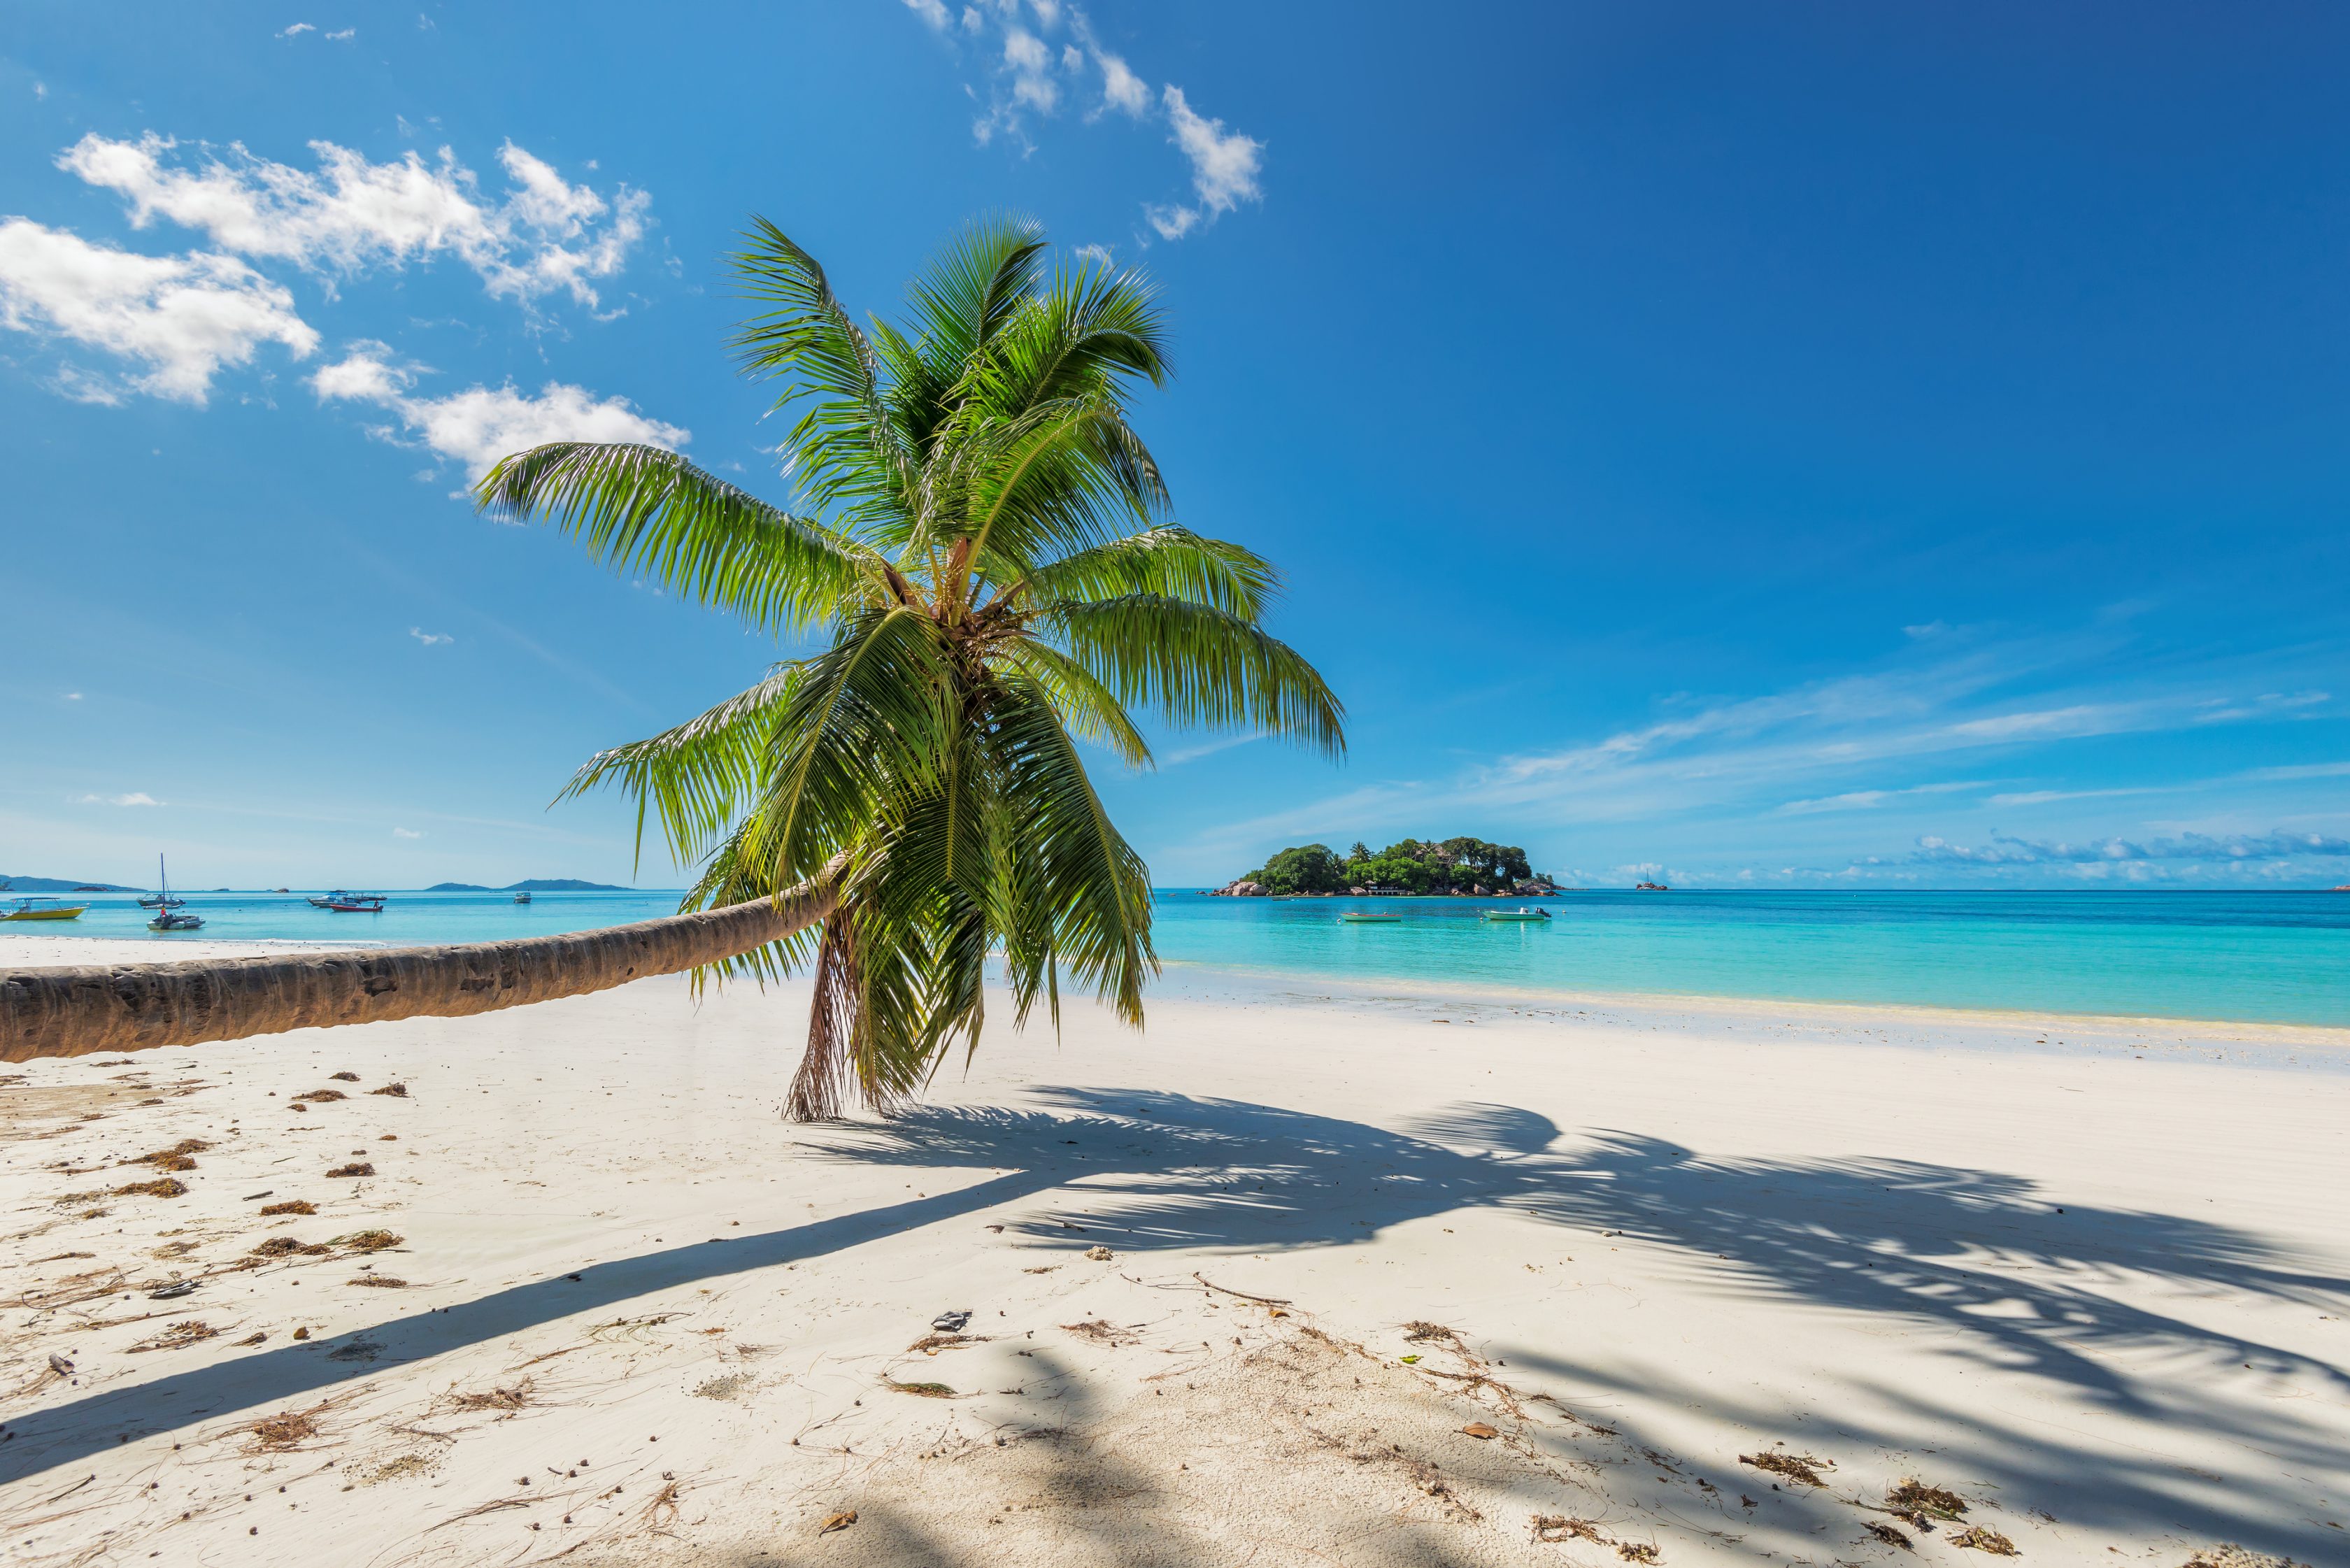 Palm over beach on a tropical island